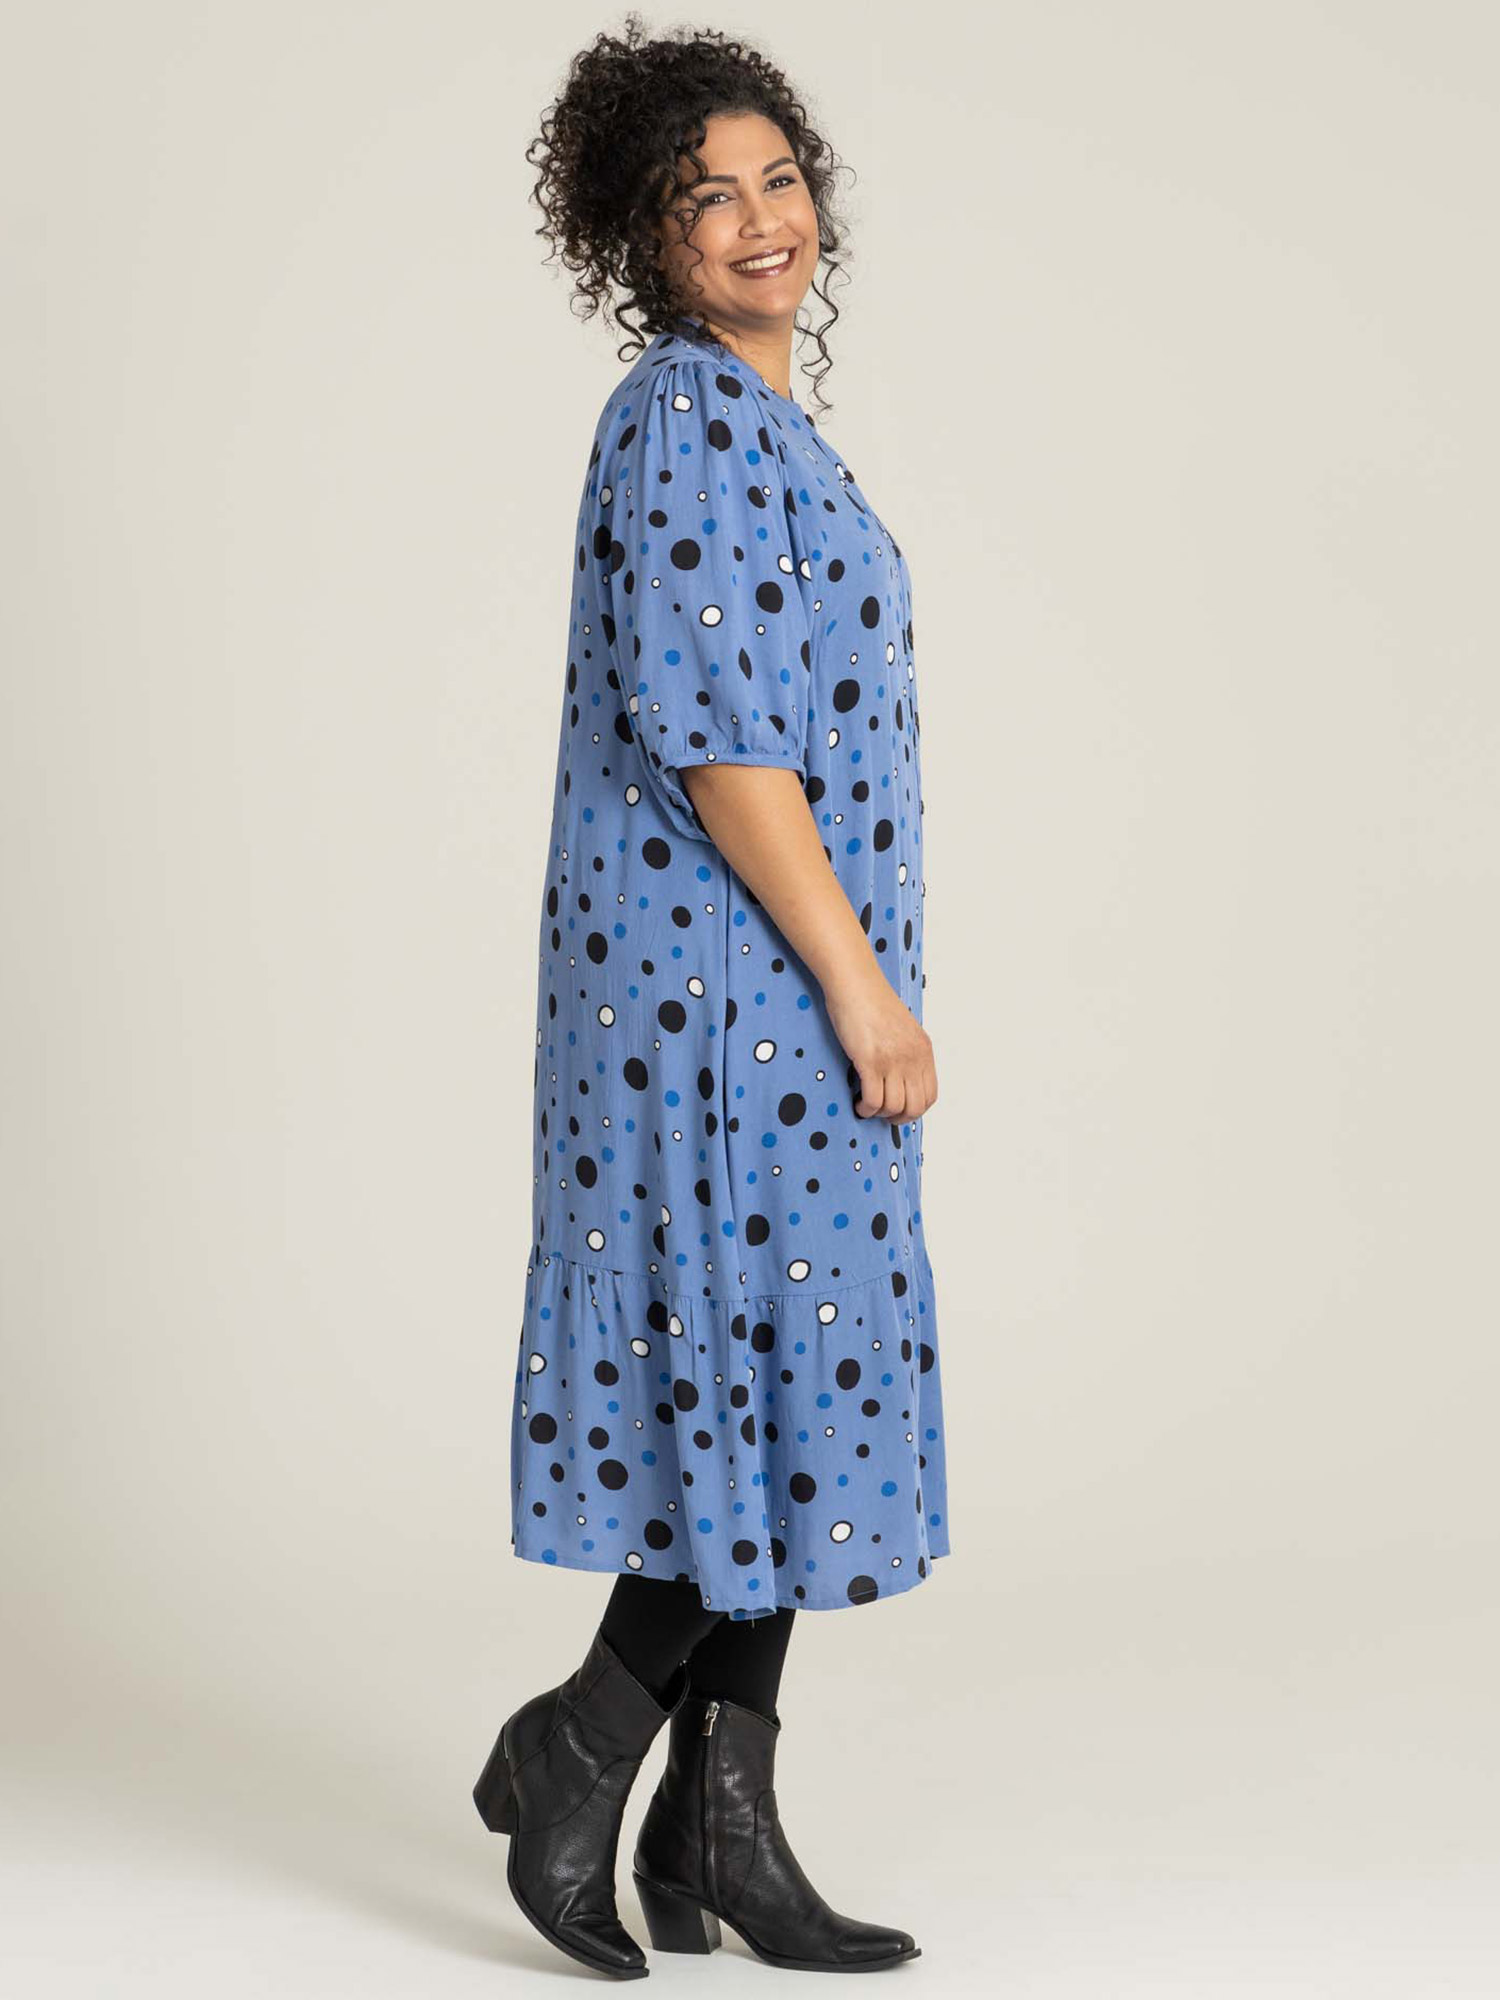 AGNETHE - Söt blå viskosklänning med prickar fra Studio